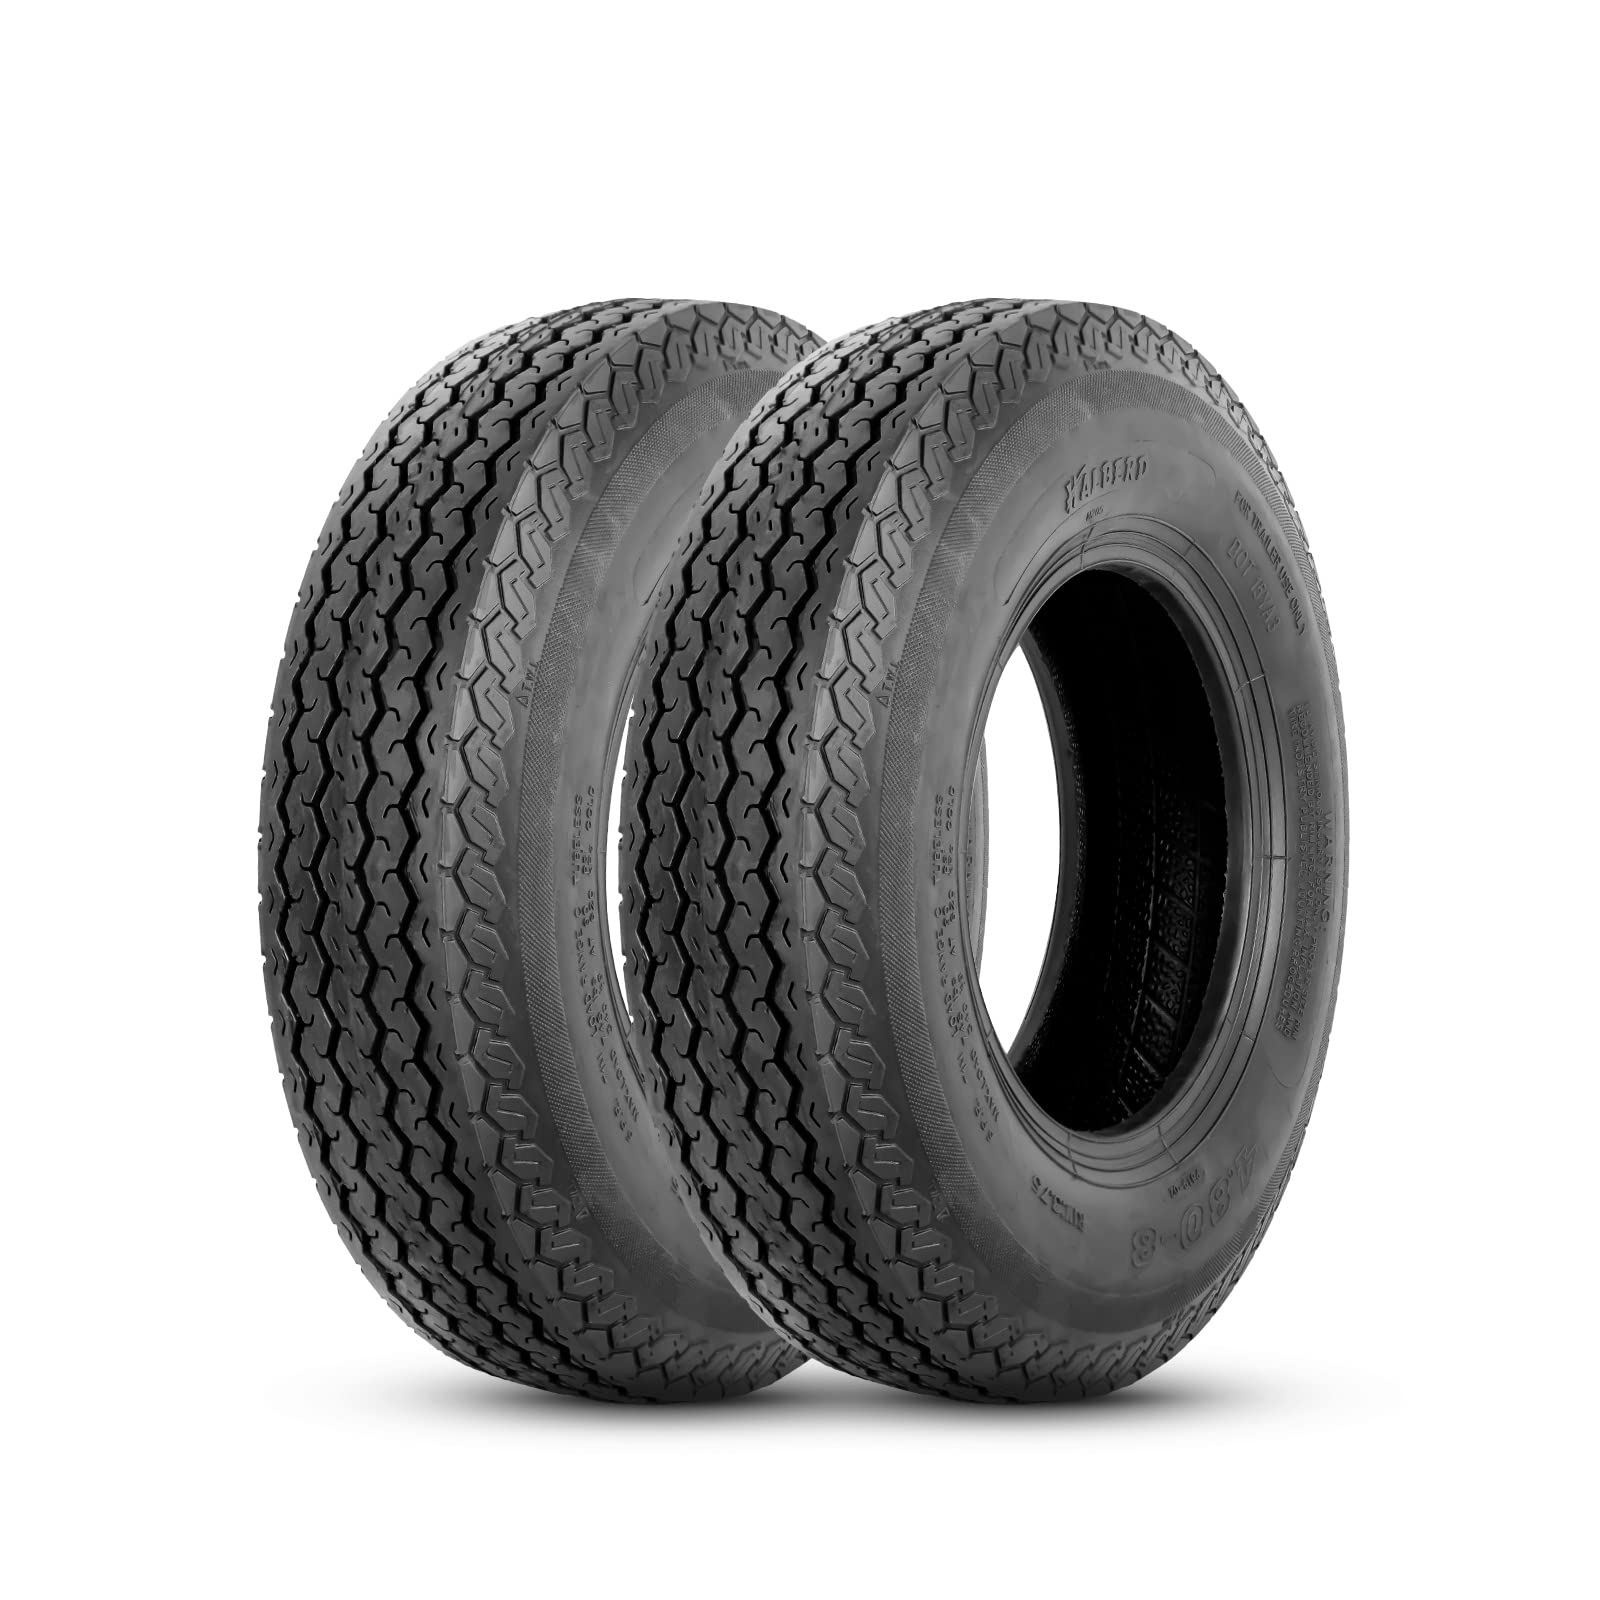 Halberd ‎P819 4.80-8 Trailer Tires